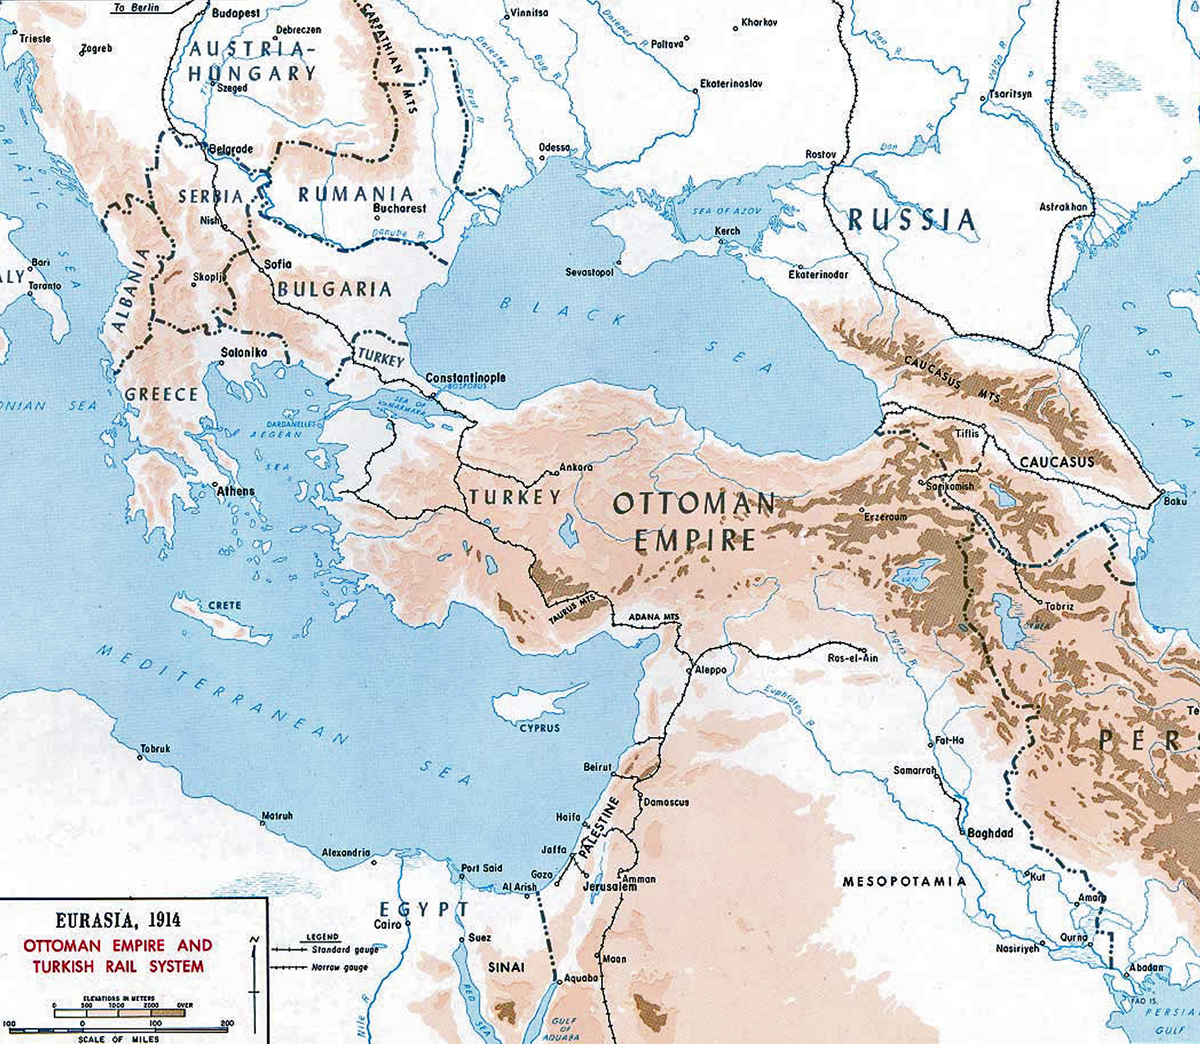 Sistema ferroviario del Imperio Otomano 1914